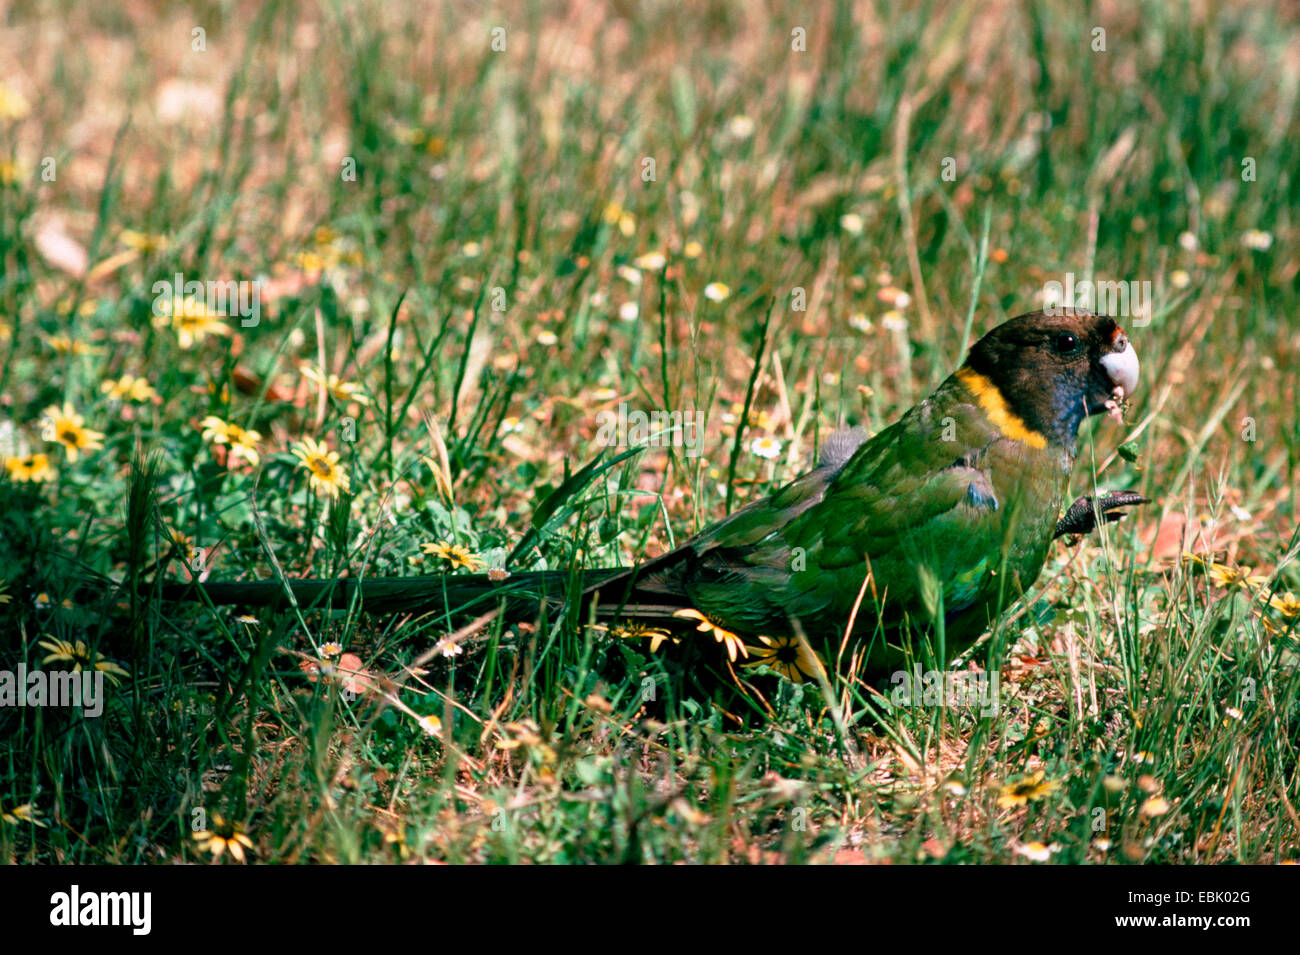 port lincoln parrot (Barnardius zonarius semitorquatus), sitting in grass, Australia Stock Photo